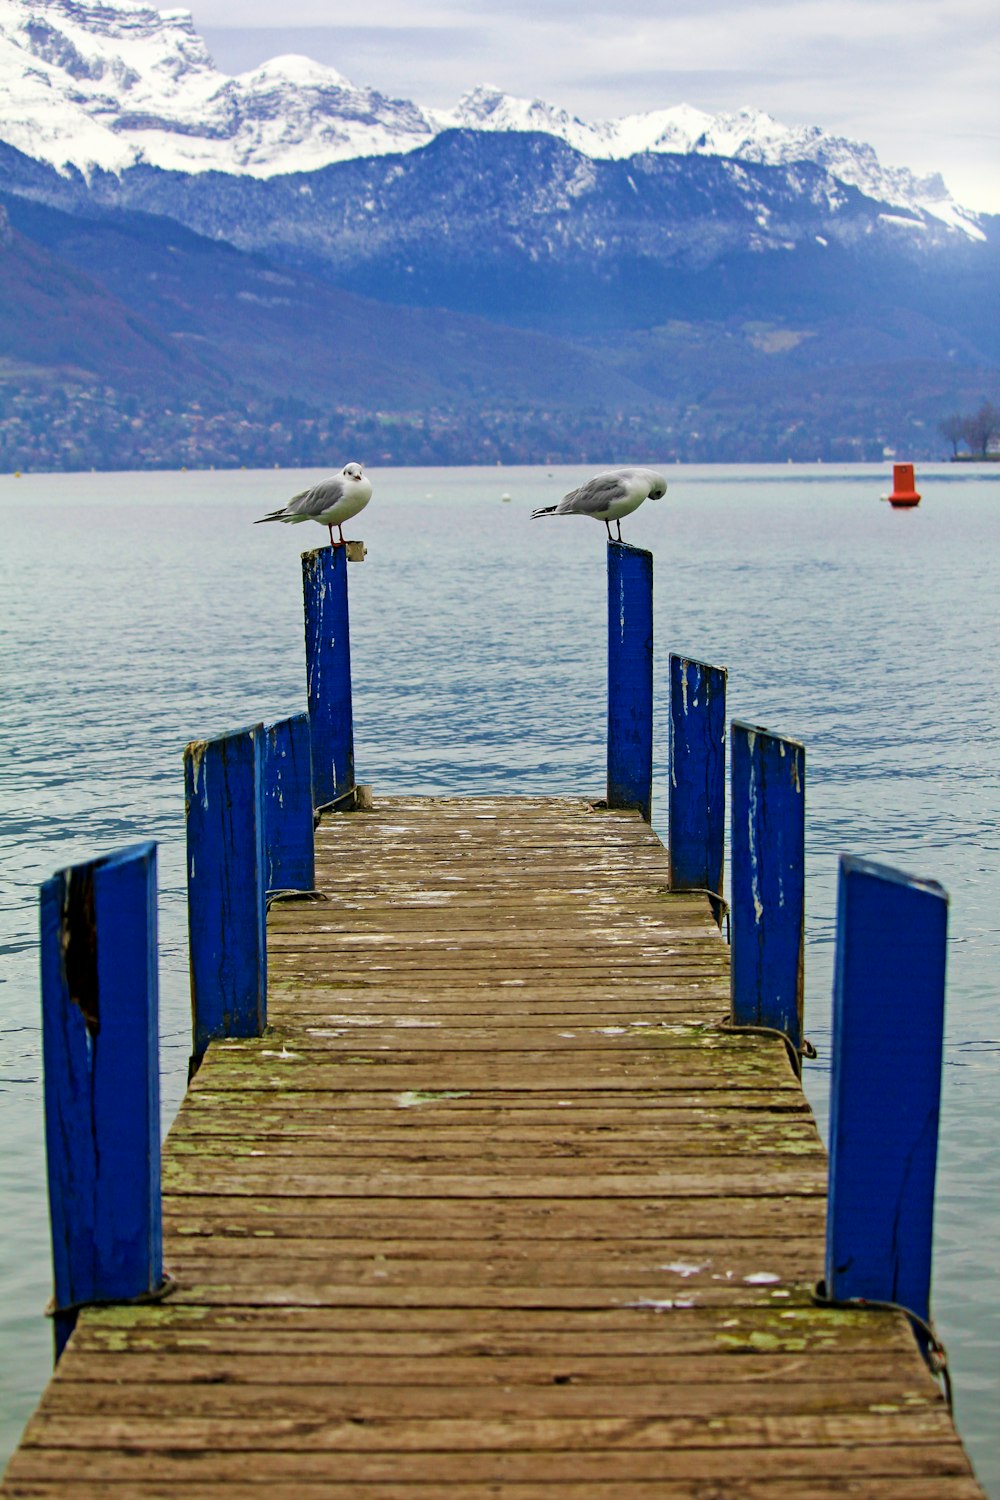 birds perching on wood dock post near water